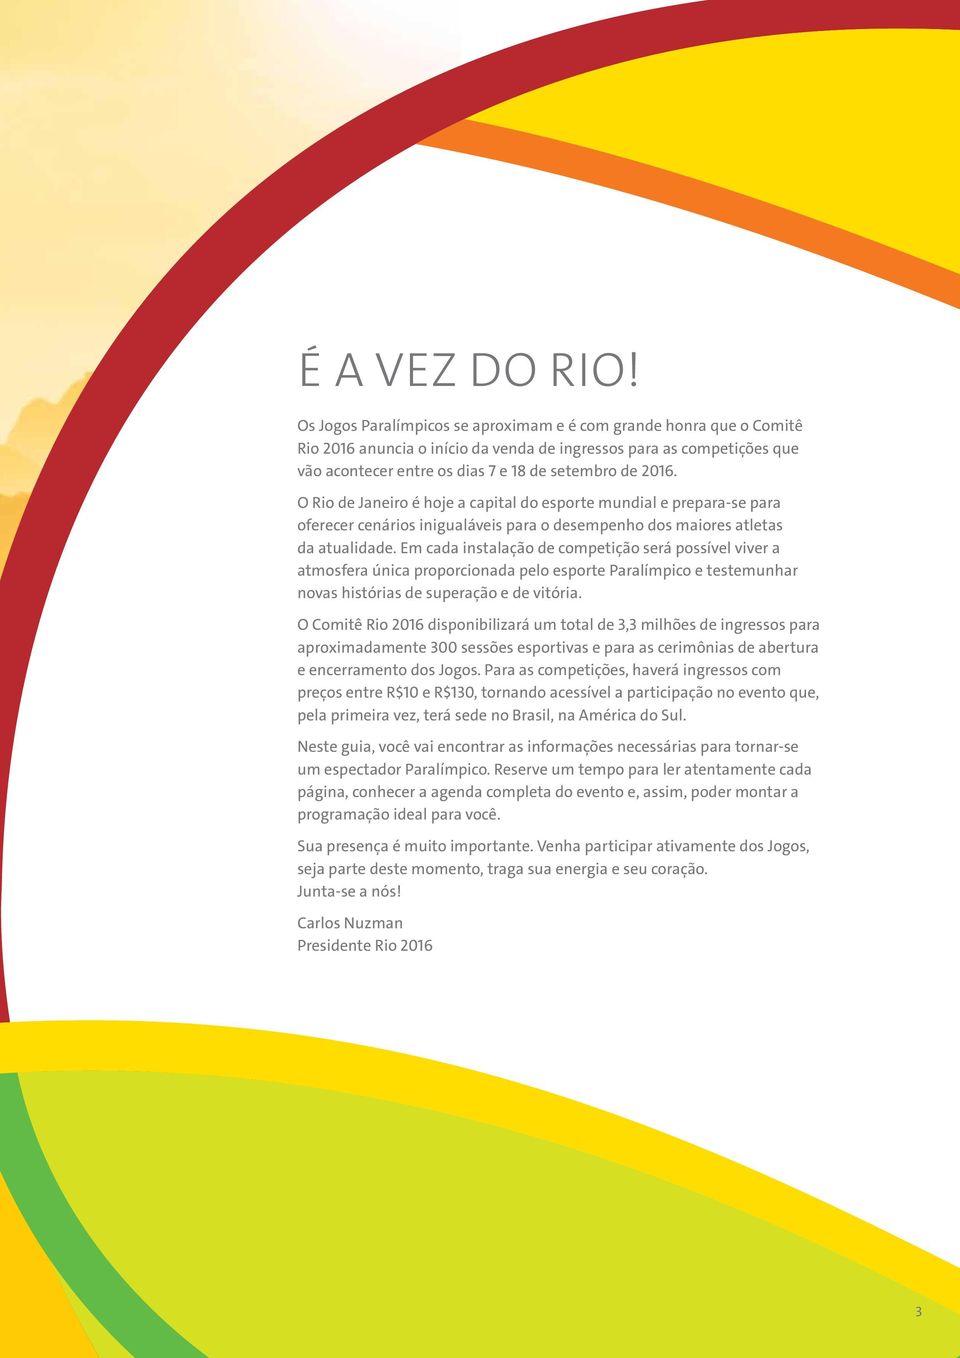 O Rio de Janeiro é hoje a capital do esporte mundial e prepara-se para oferecer cenários inigualáveis para o desempenho dos maiores atletas da atualidade.